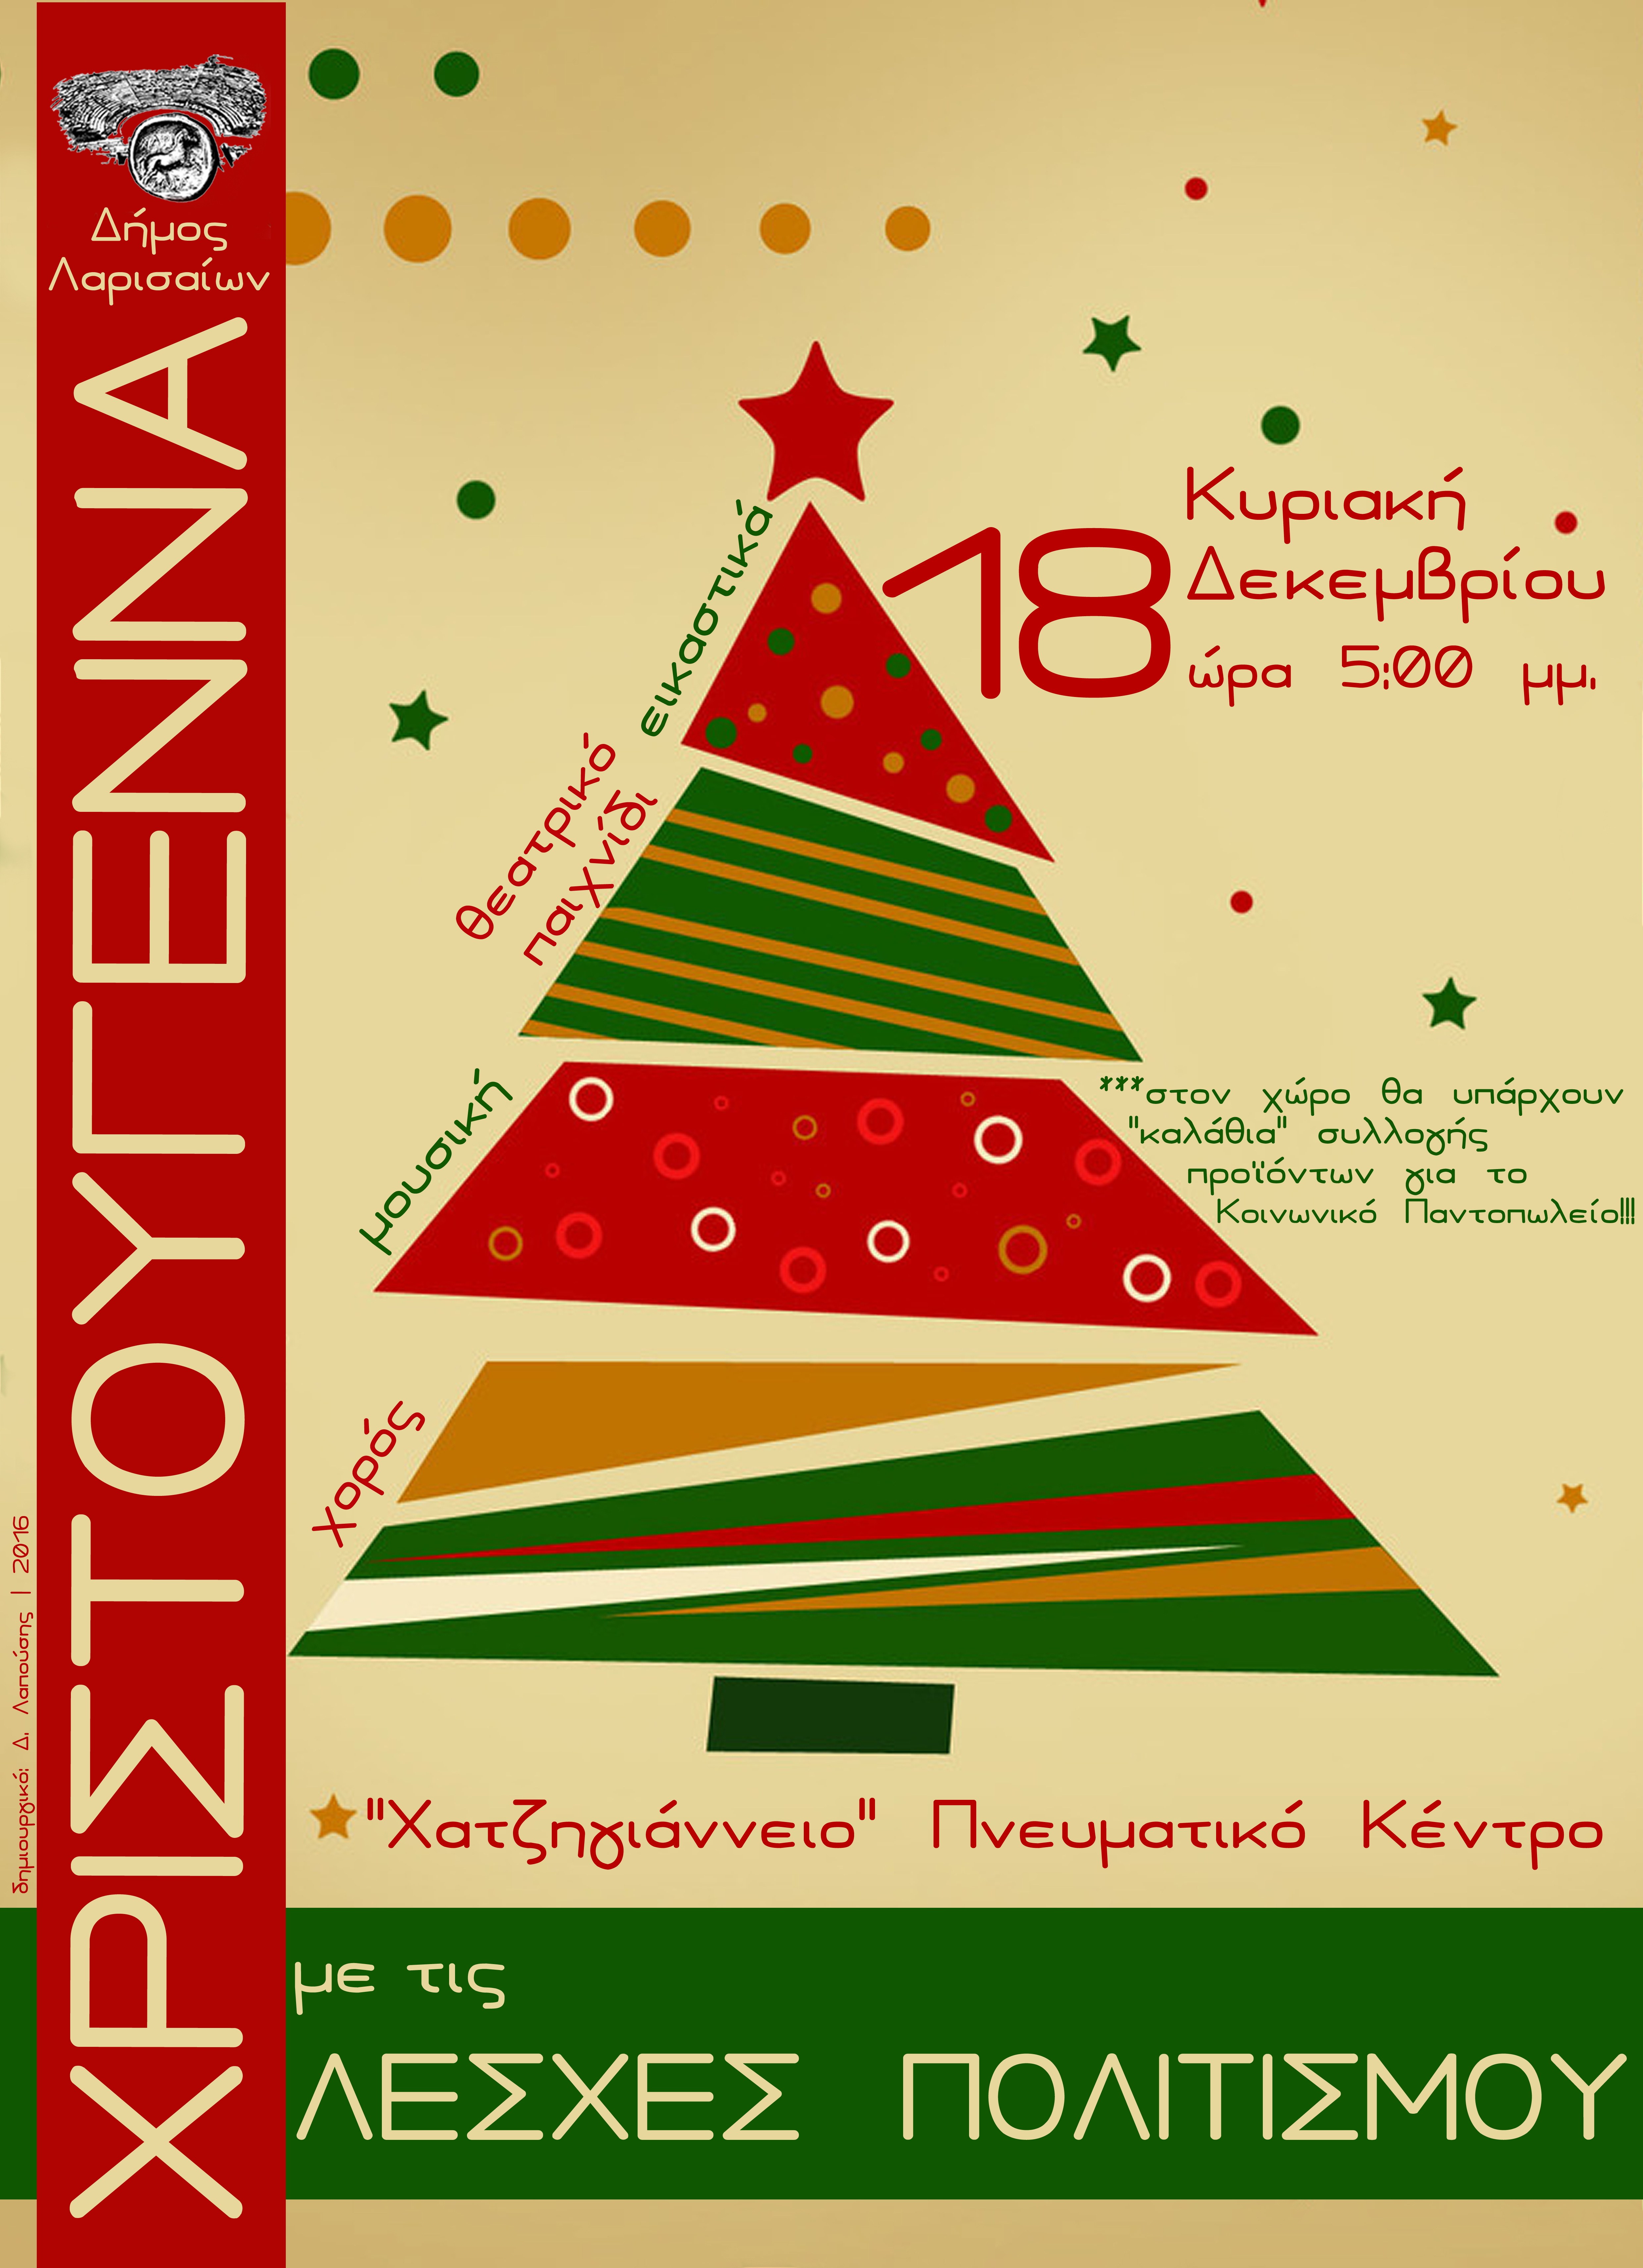 Χριστουγεννιάτικη εκδήλωση των Λεσχων Πολιτισμού του Δήμου Λαρισαίων